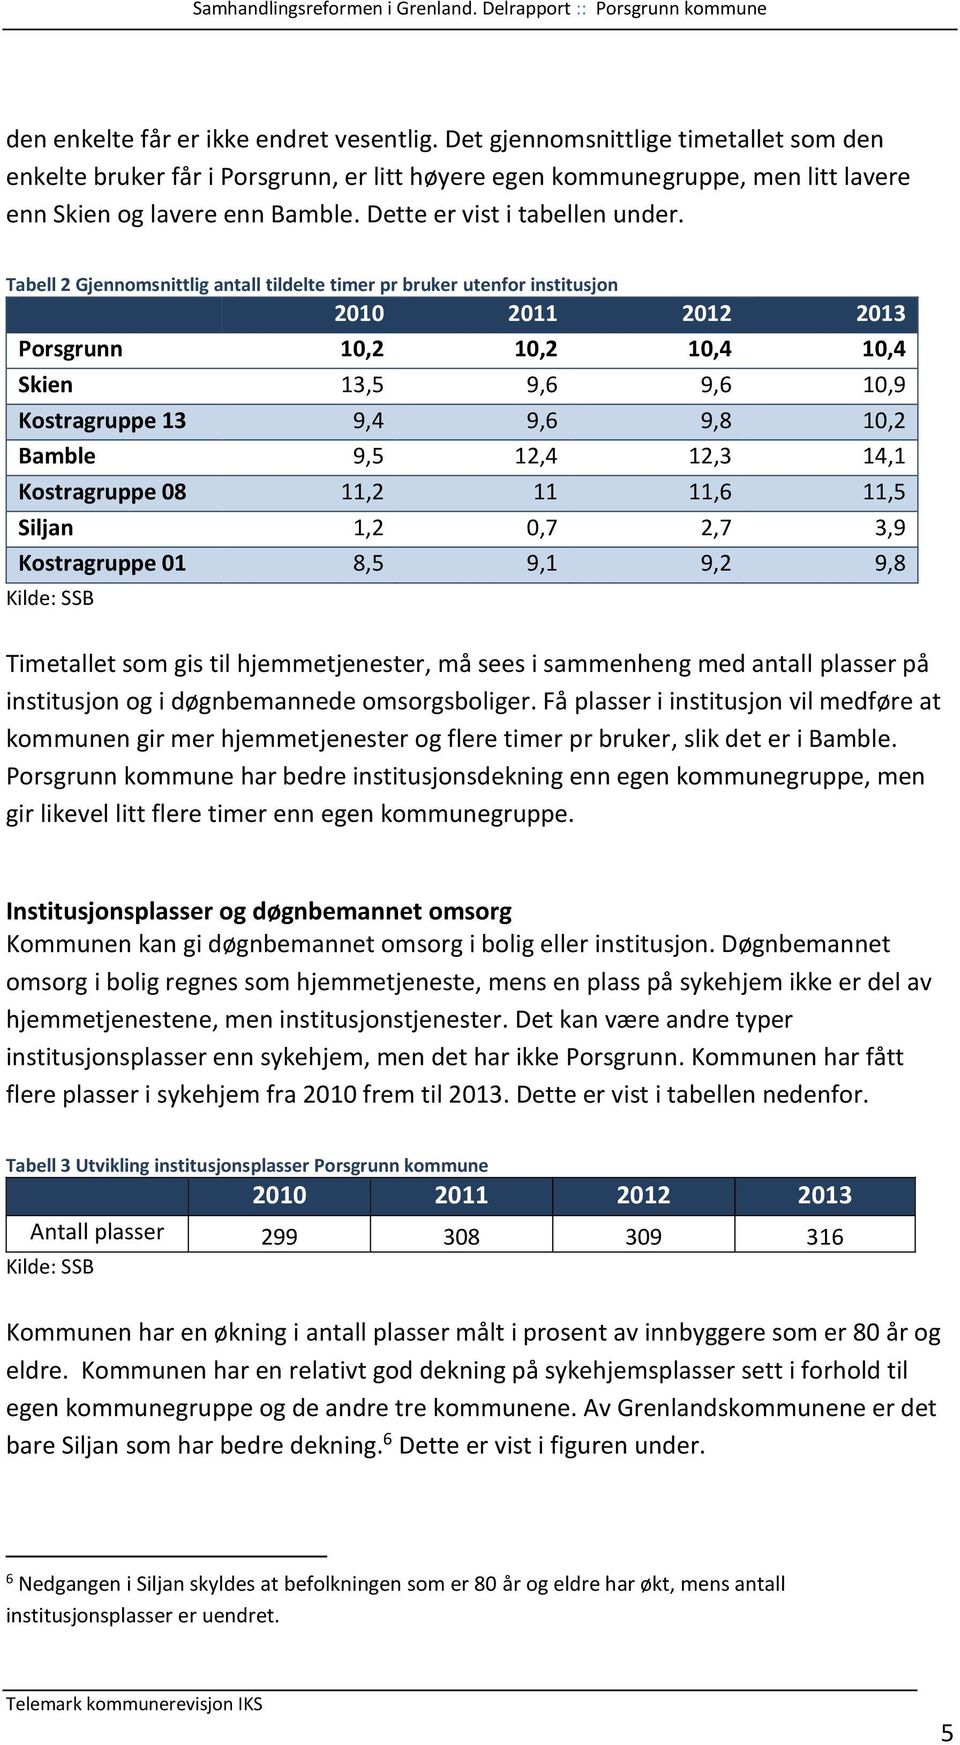 Tabell 2 Gjennomsnittlig antall tildelte timer pr bruker utenfor institusjon 2010 2011 2012 2013 Porsgrunn 10,2 10,2 10,4 10,4 Skien 13,5 9,6 9,6 10,9 Kostragruppe 13 9,4 9,6 9,8 10,2 Bamble 9,5 12,4